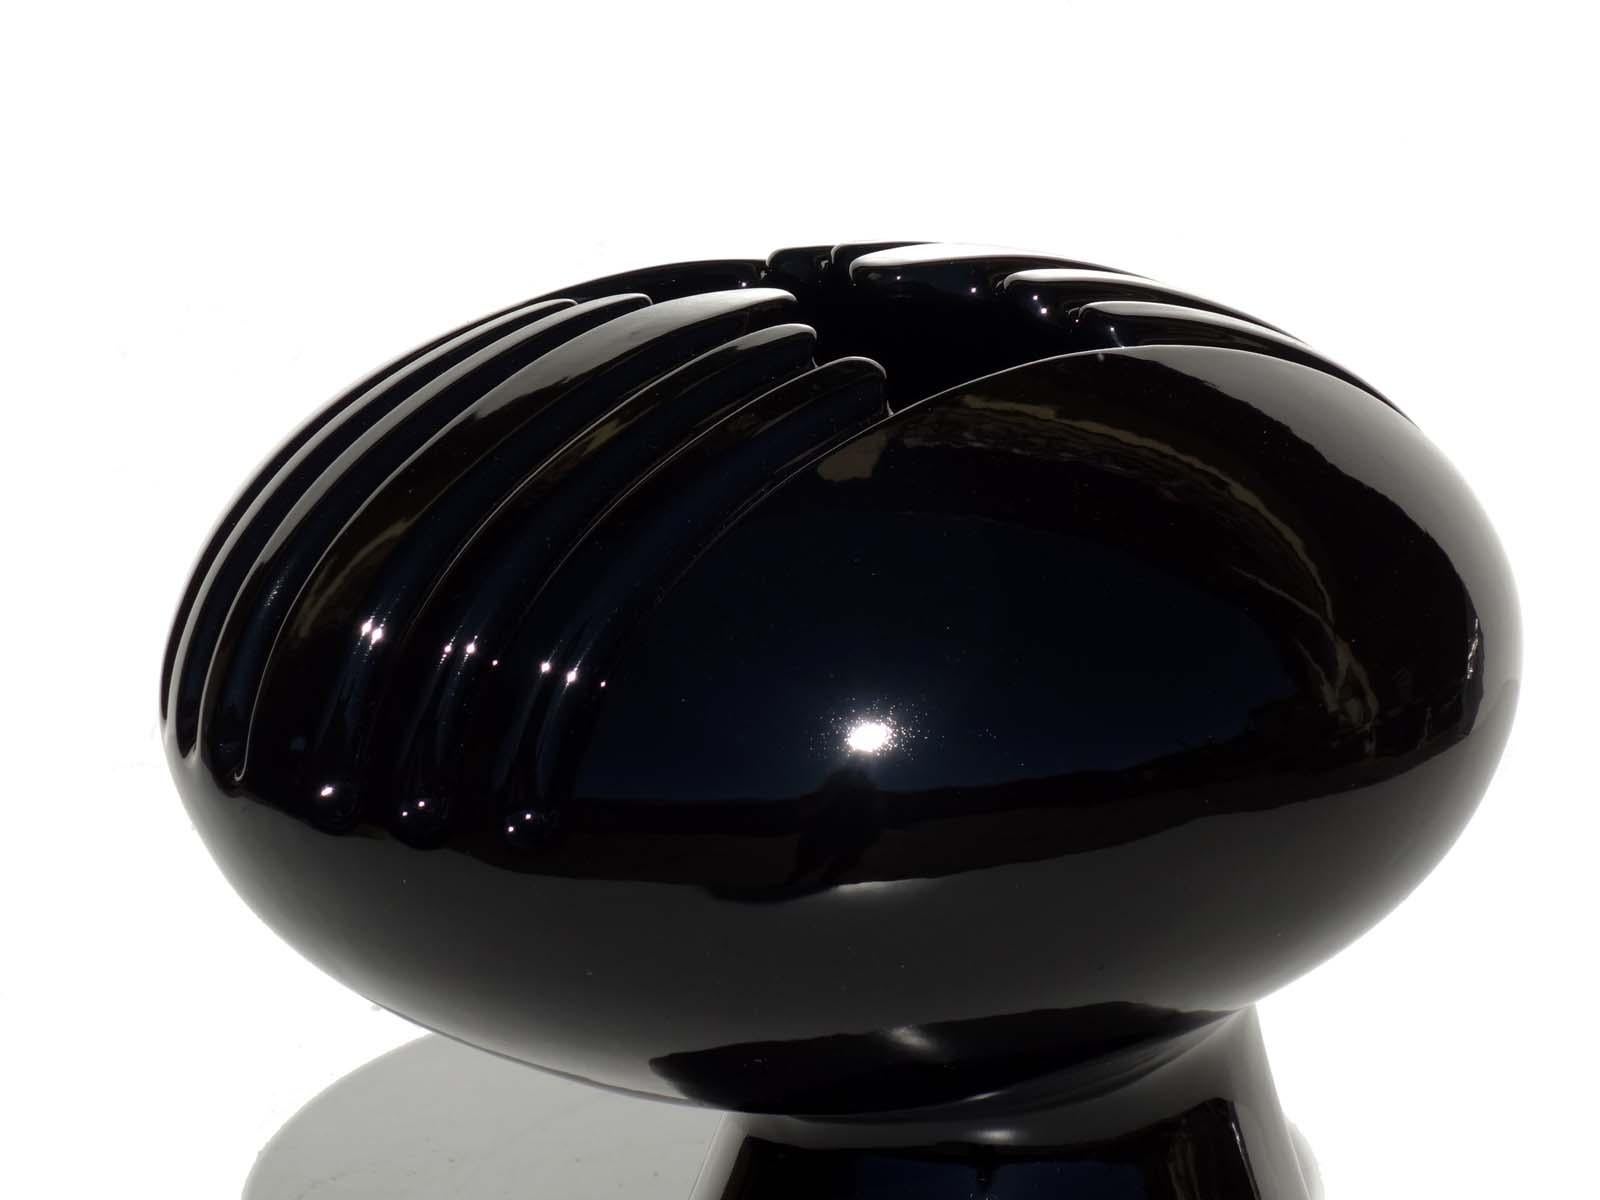 Mid-Century Modern 1960s by Il Picchio Enzo Bioli Italian Space Age Design Ceramic Vase For Sale